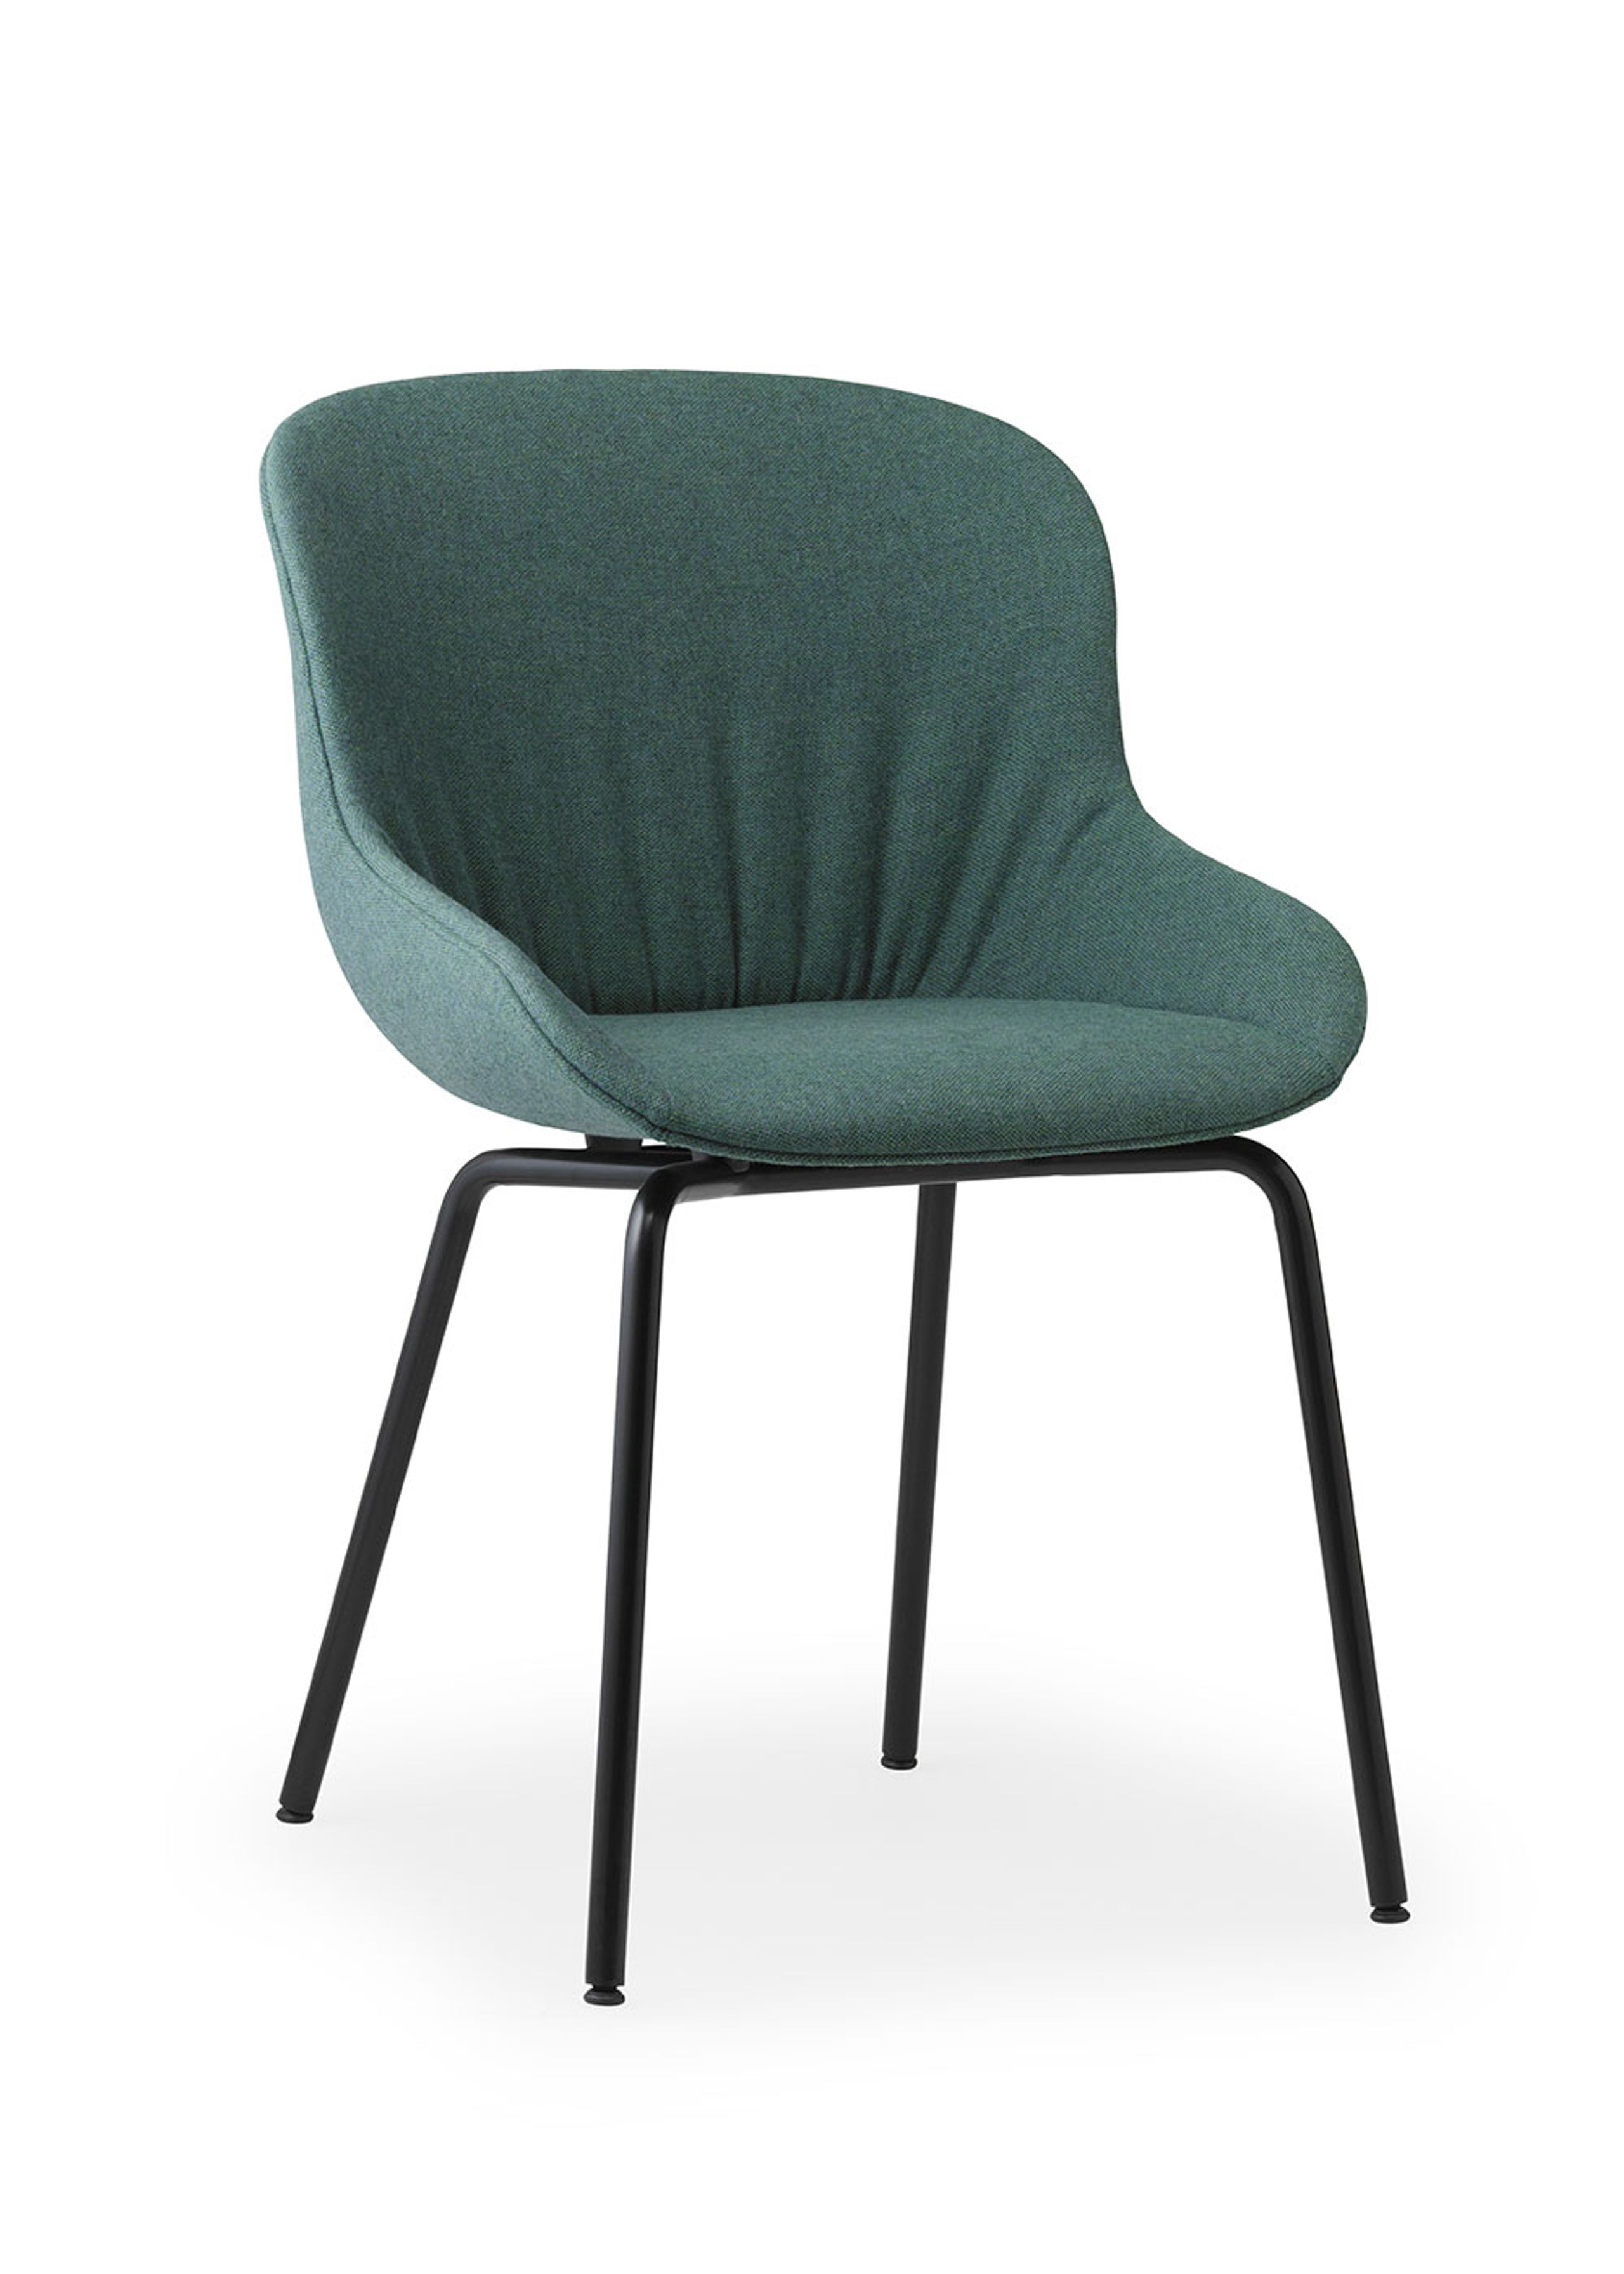 Normann Copenhagen - Esstischstuhl - Hyg Comfort Chair Full Upholstery - Base: Steel / Black/Main Line Flax